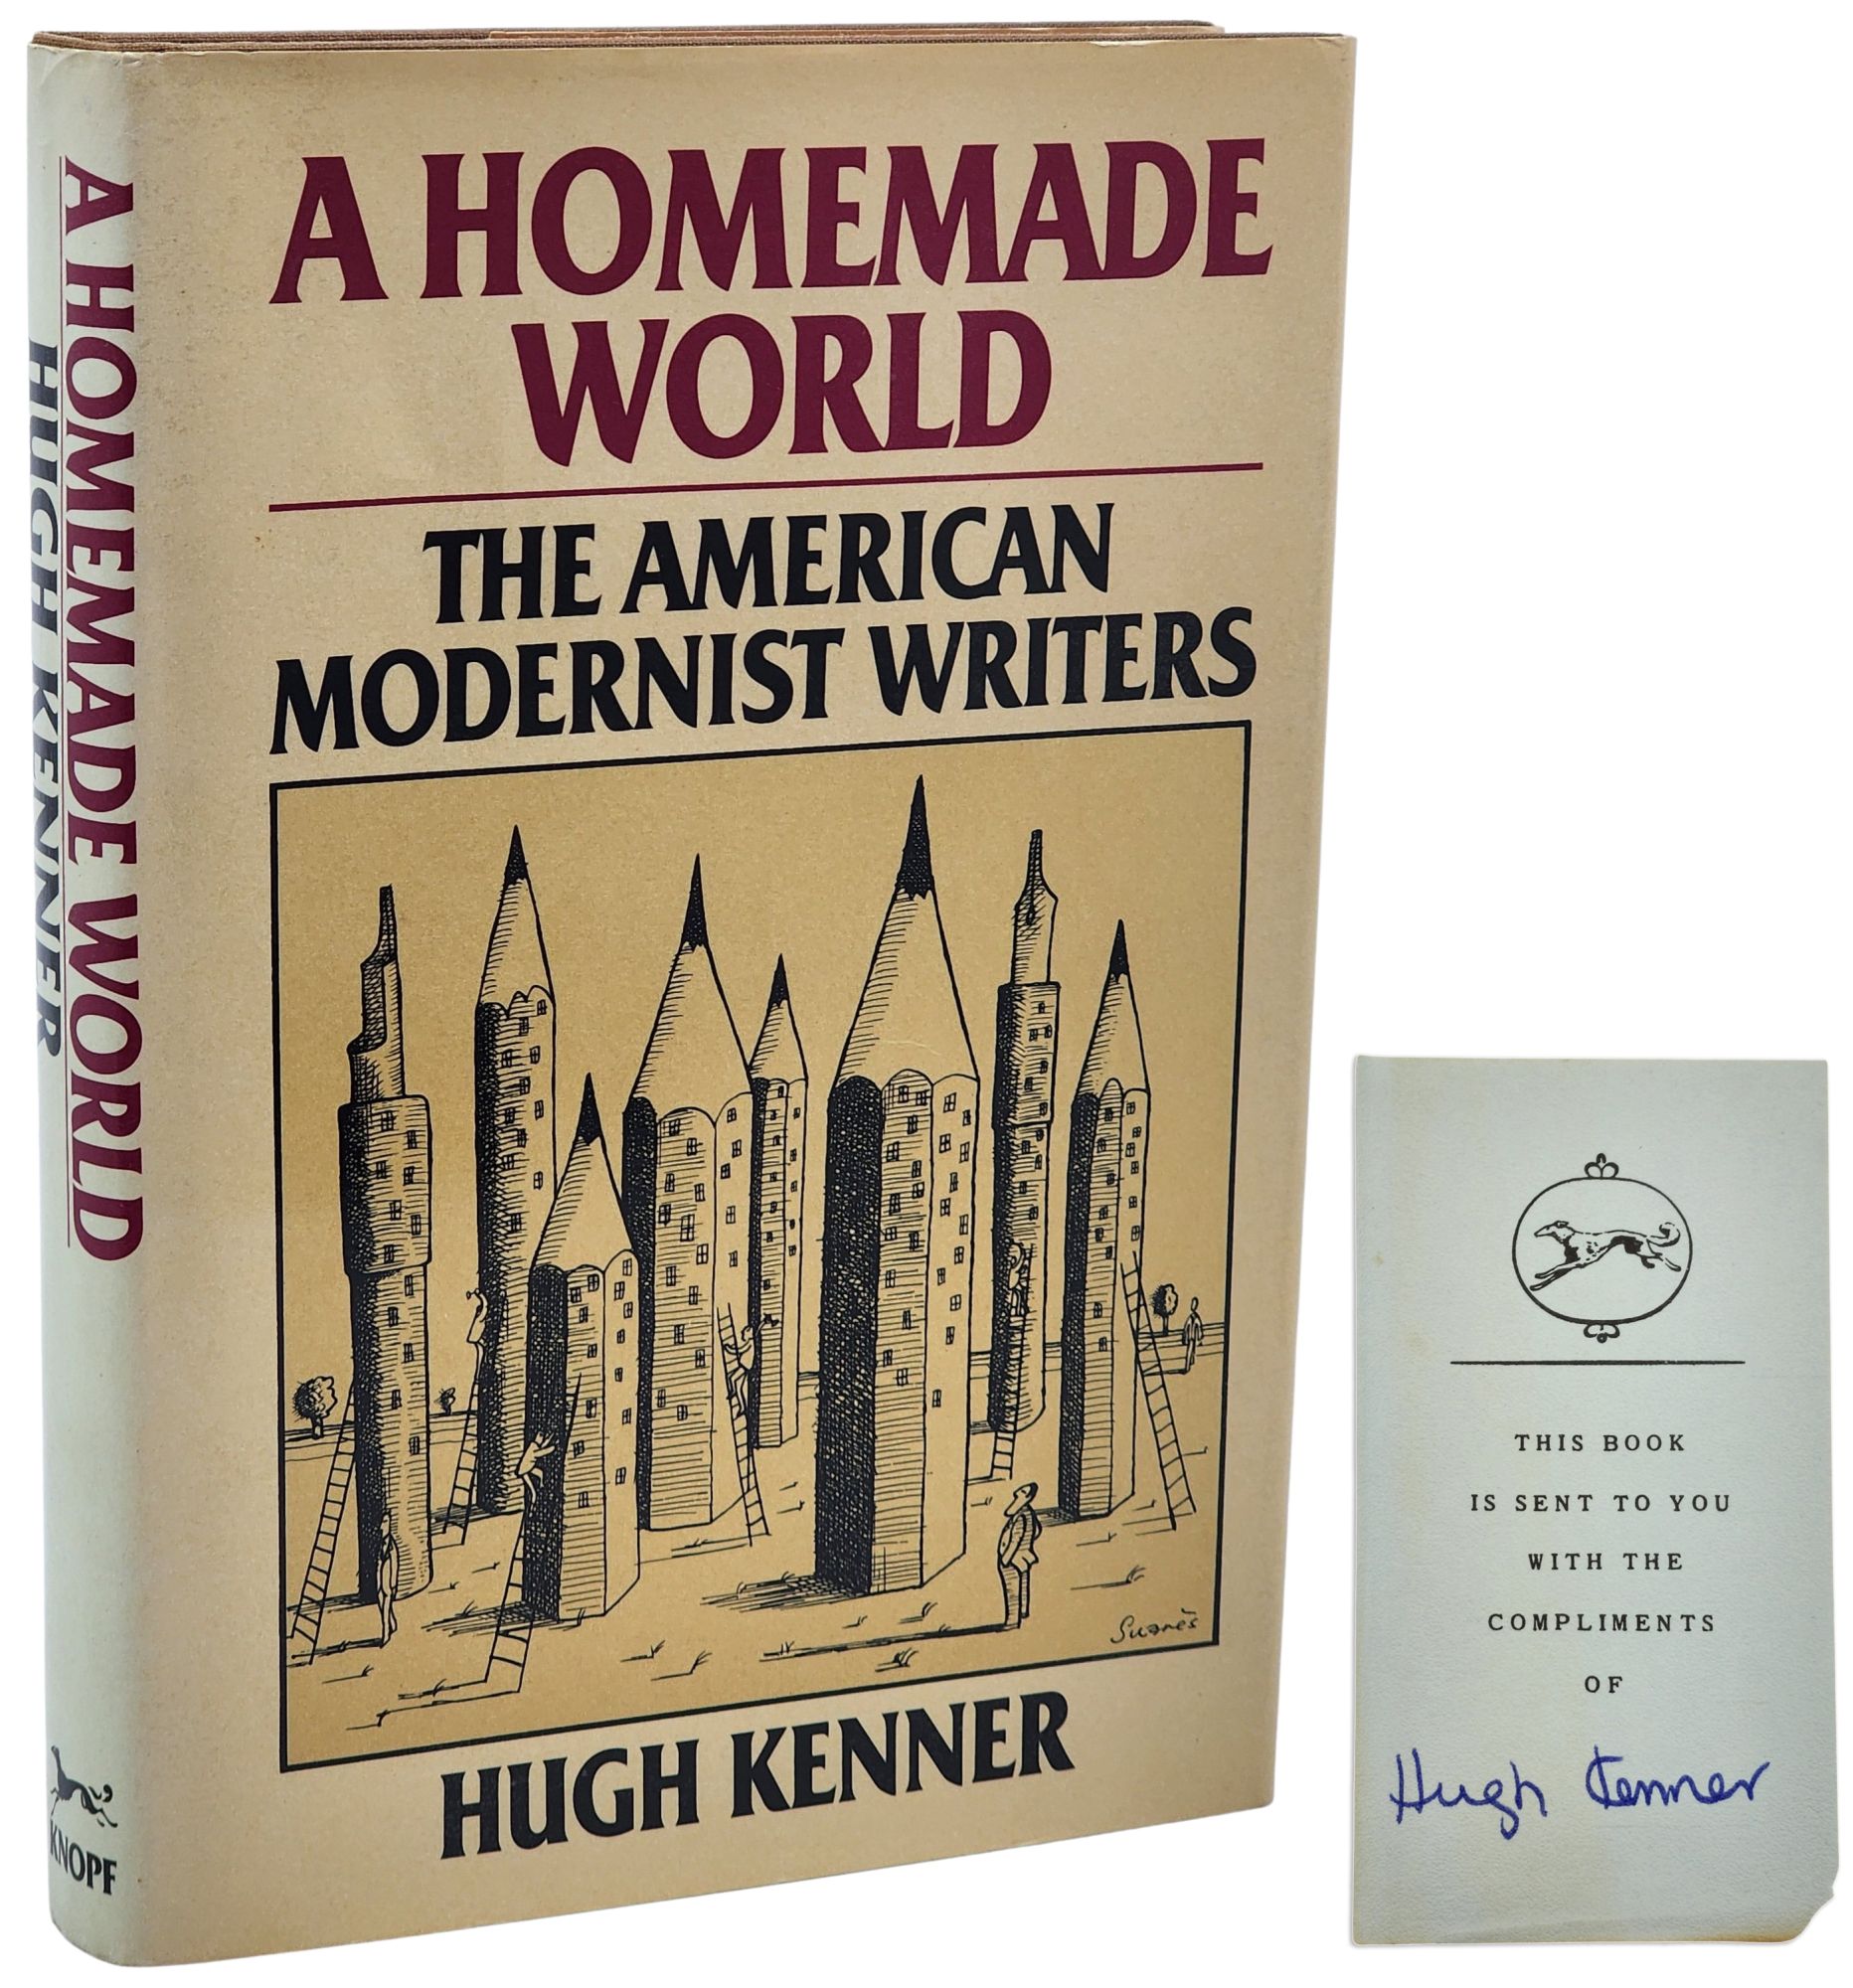 [Book #50897] A HOMEMADE WORLD. Hugh Kenner.